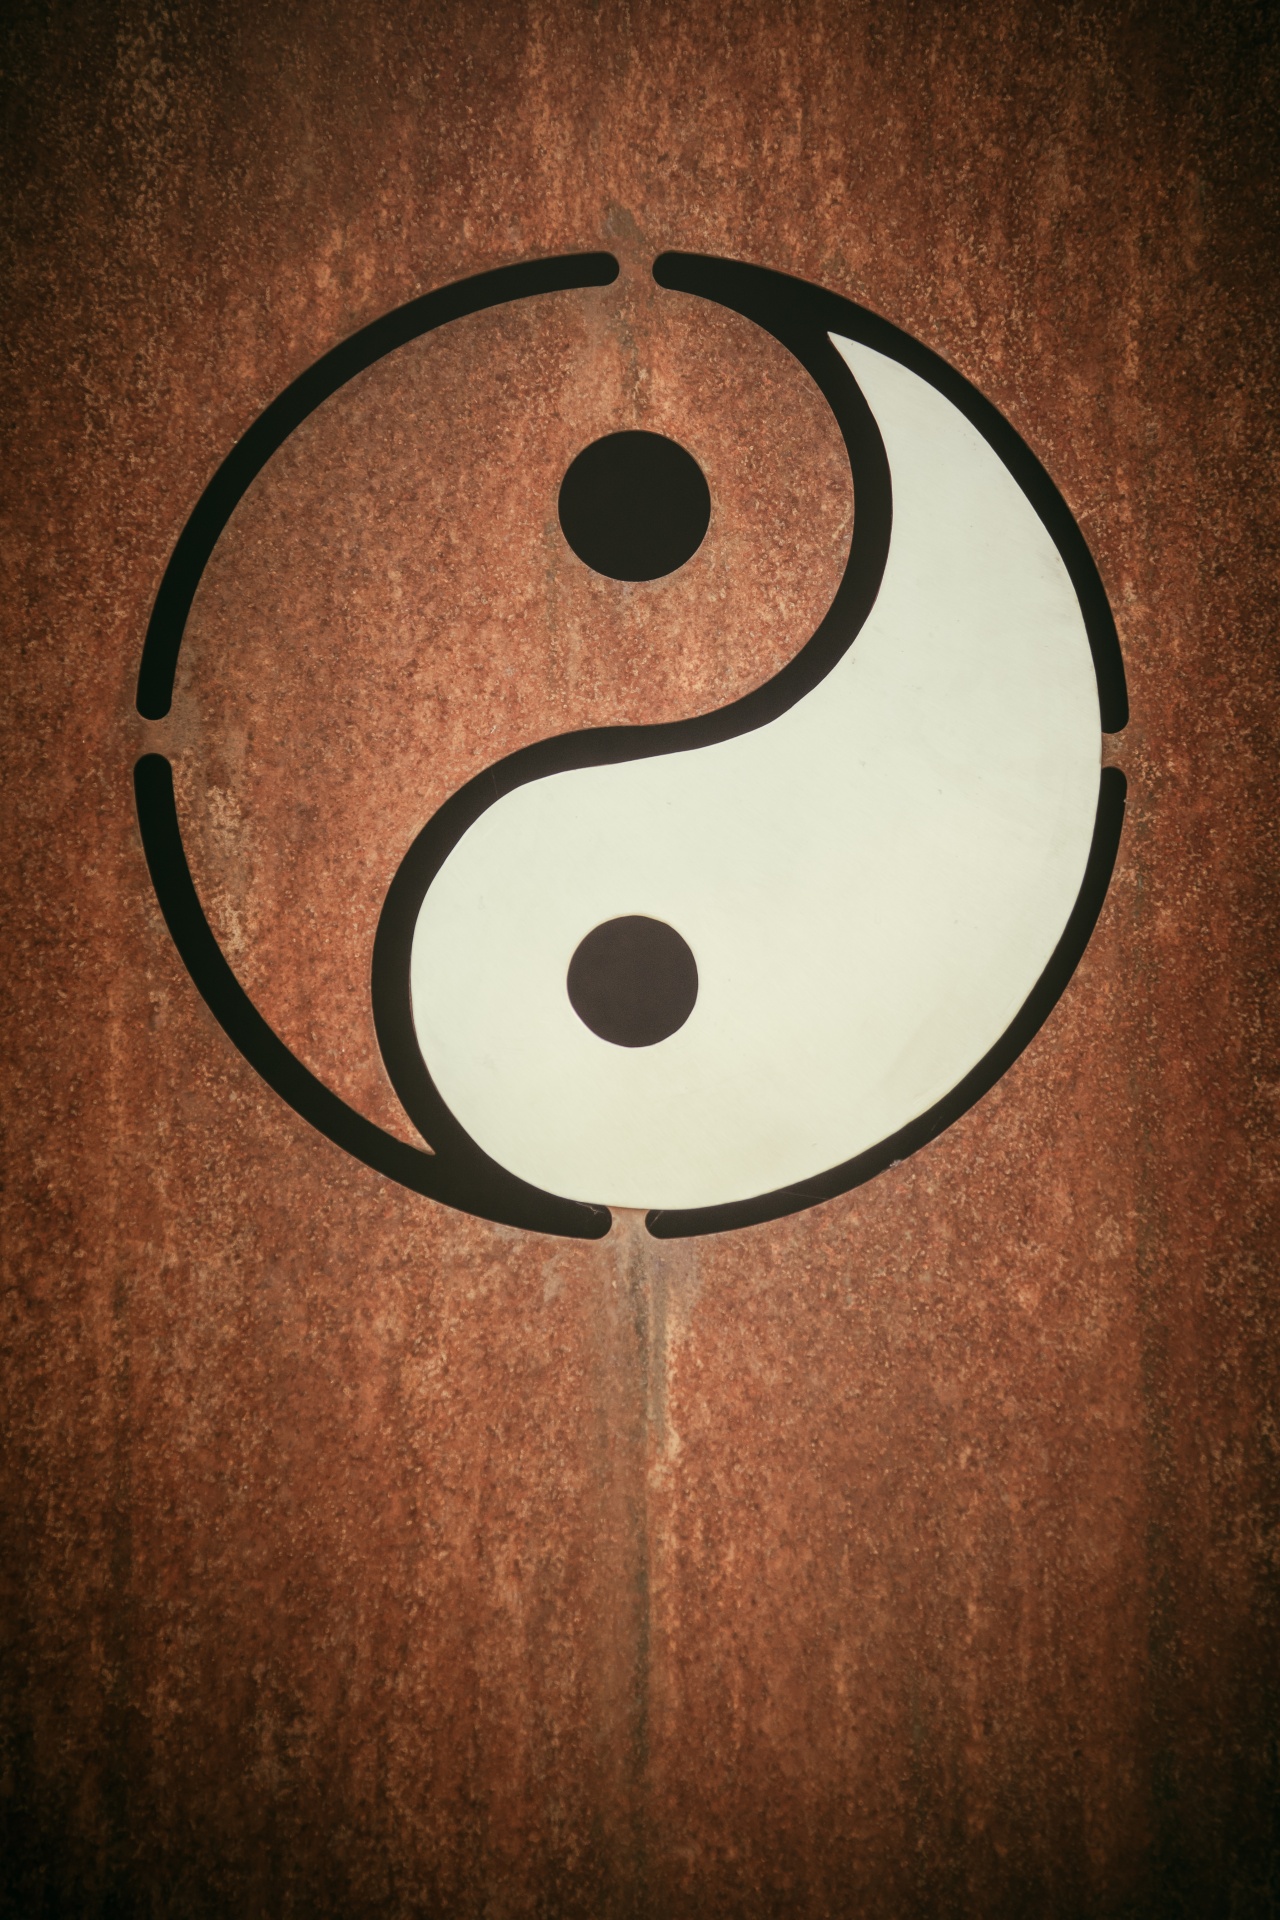 Símbolo yin yang